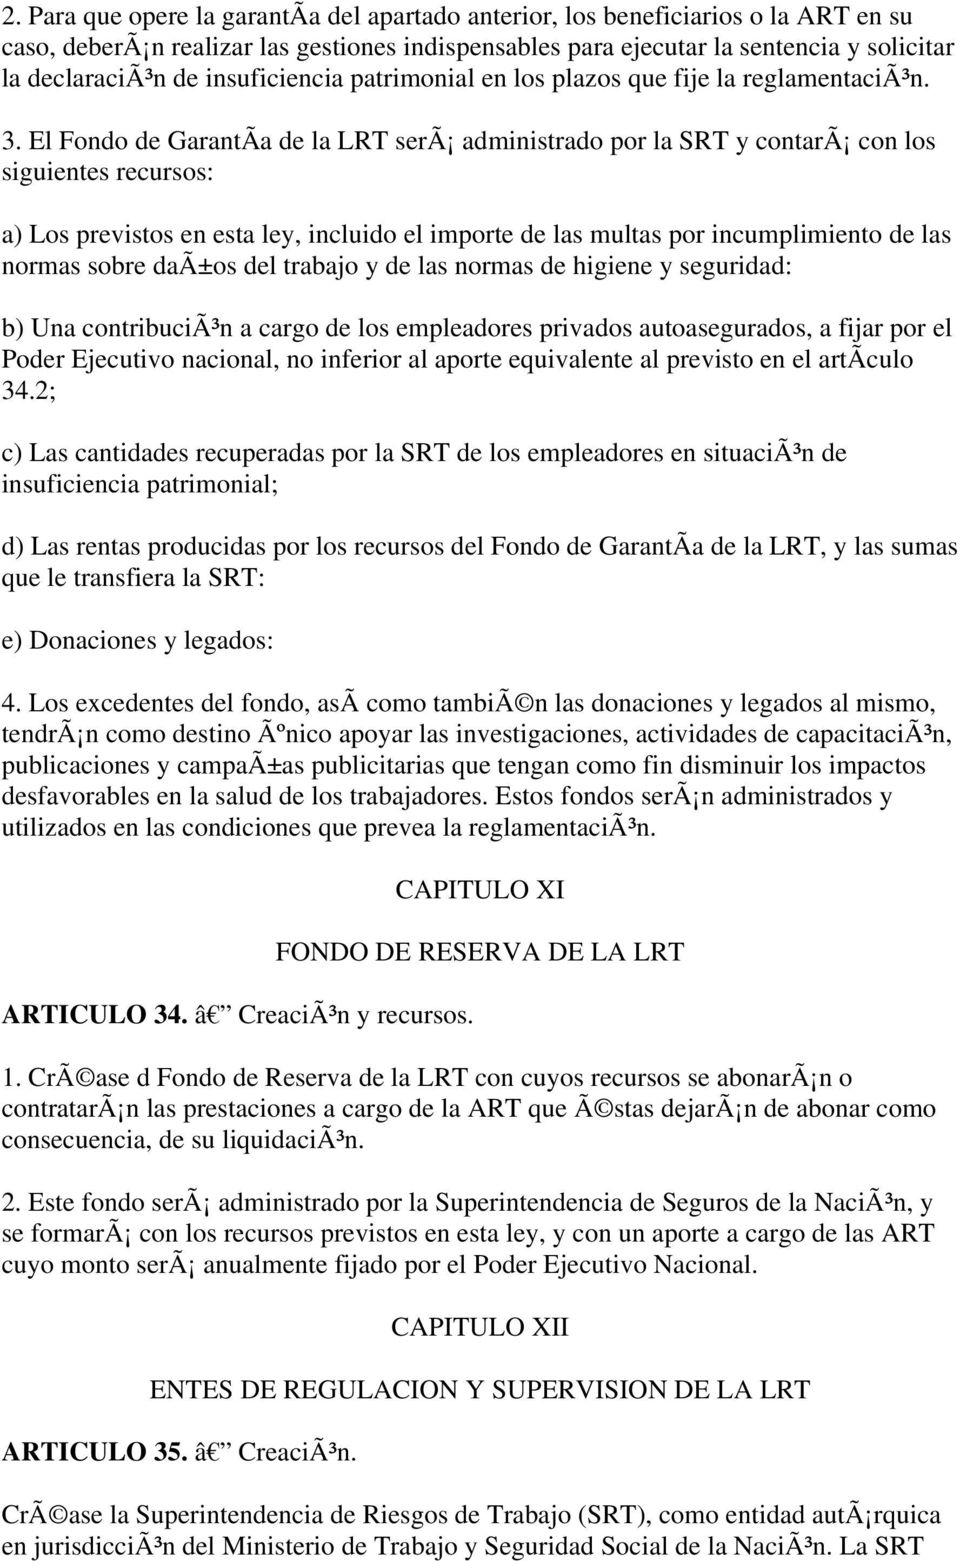 El Fondo de GarantÃa de la LRT serã administrado por la SRT y contarã con los siguientes recursos: a) Los previstos en esta ley, incluido el importe de las multas por incumplimiento de las normas